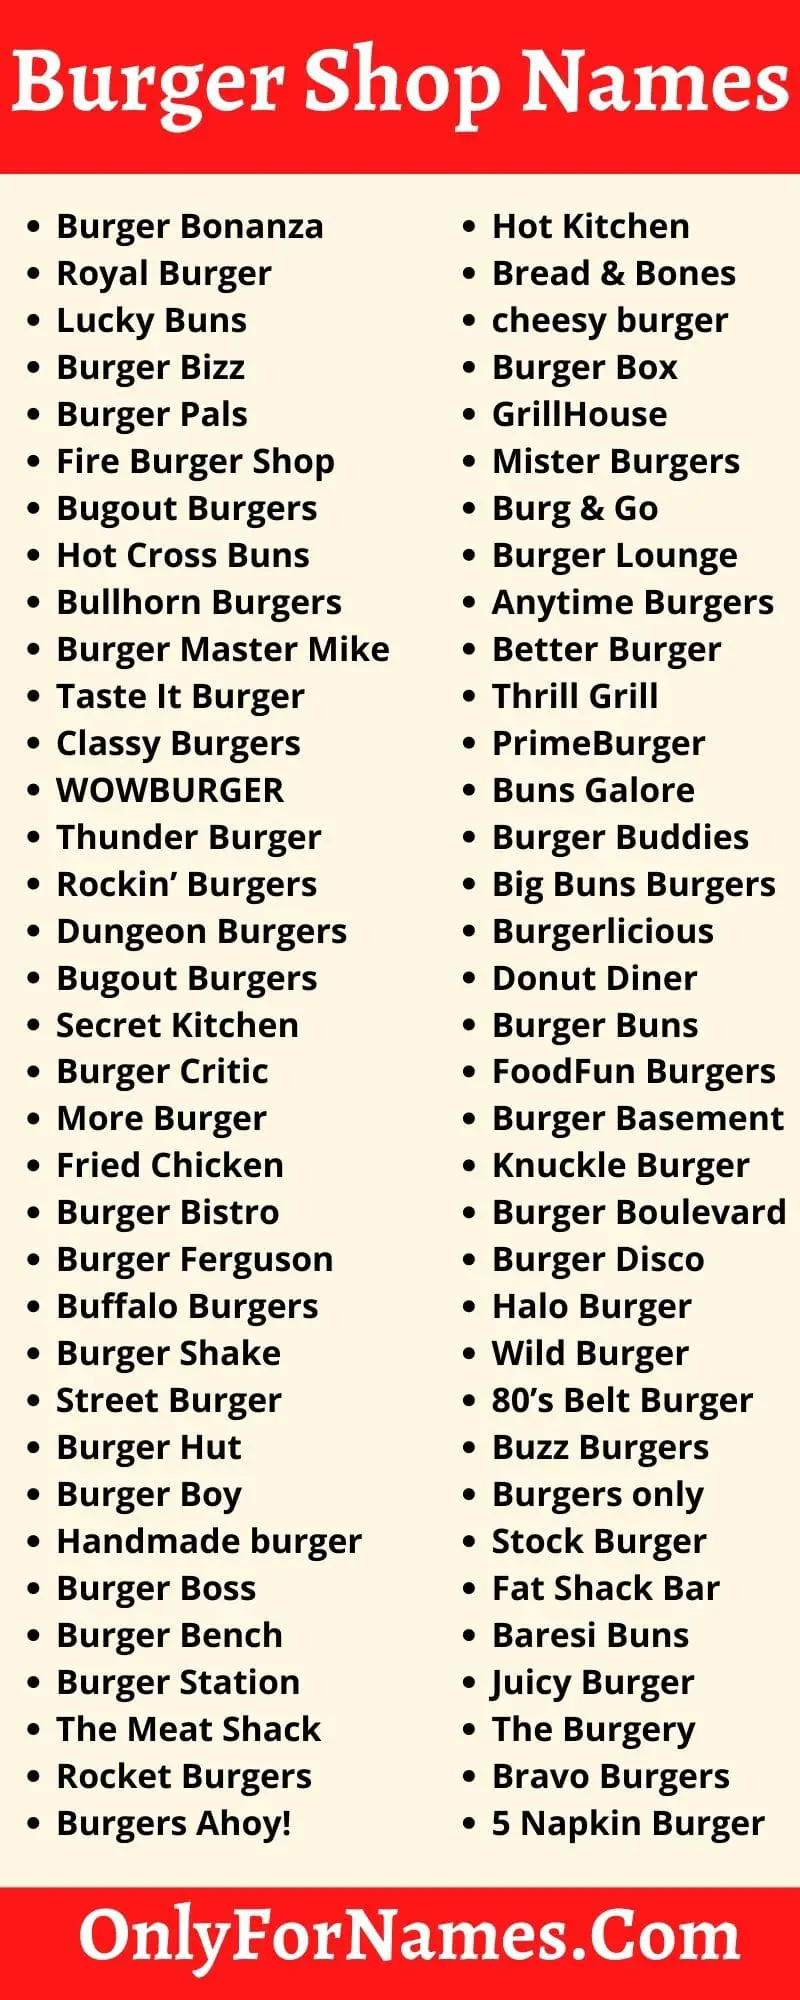 Burger Shop Names